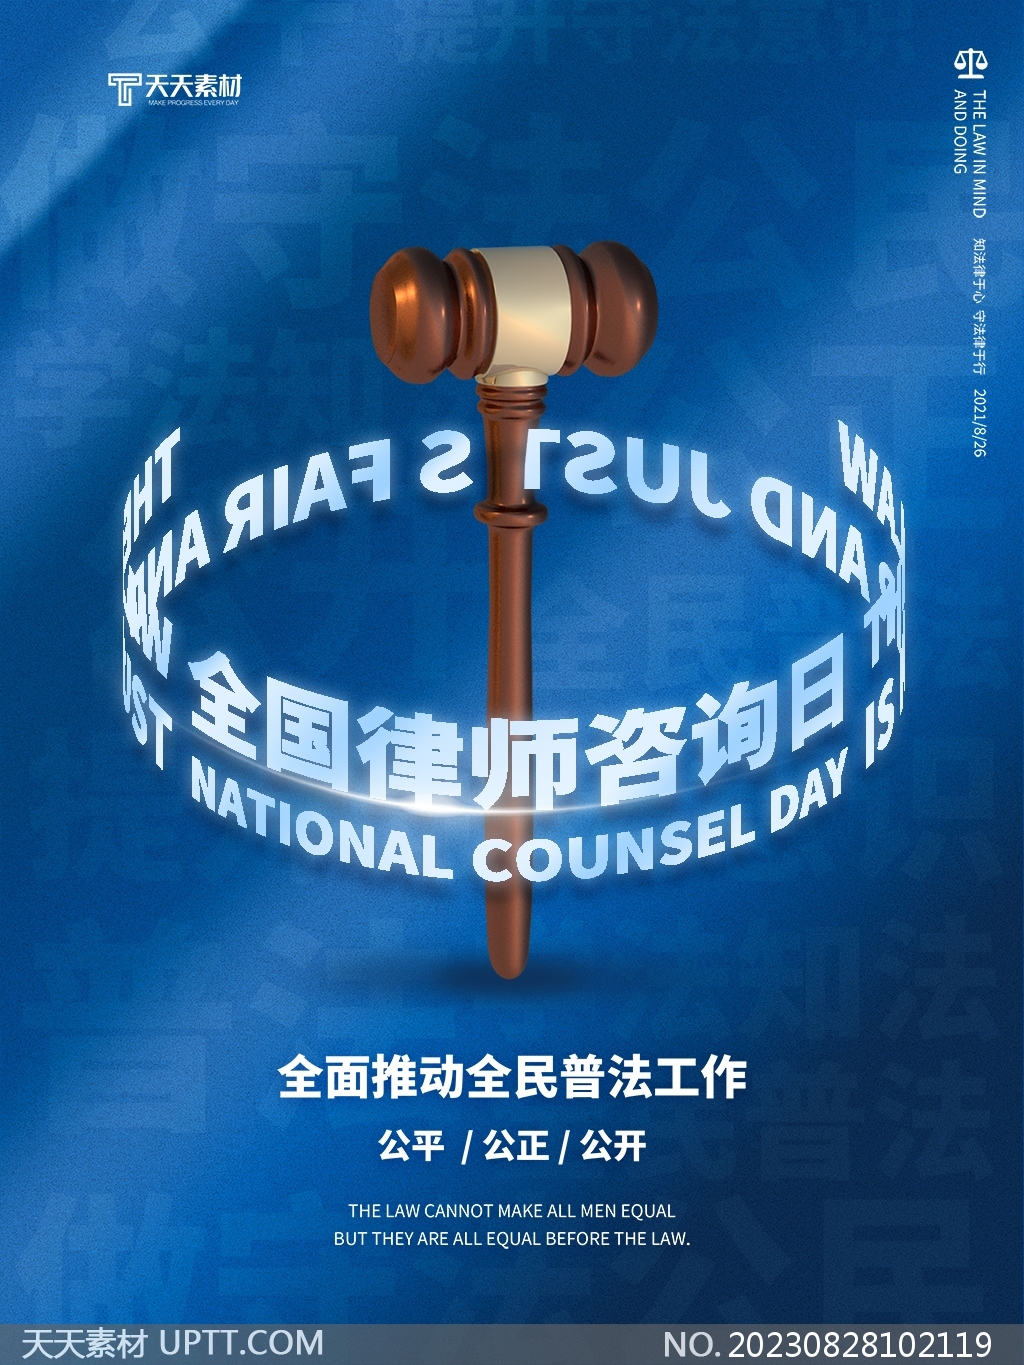 律师事务所全国律师咨询日蓝色宣传海报